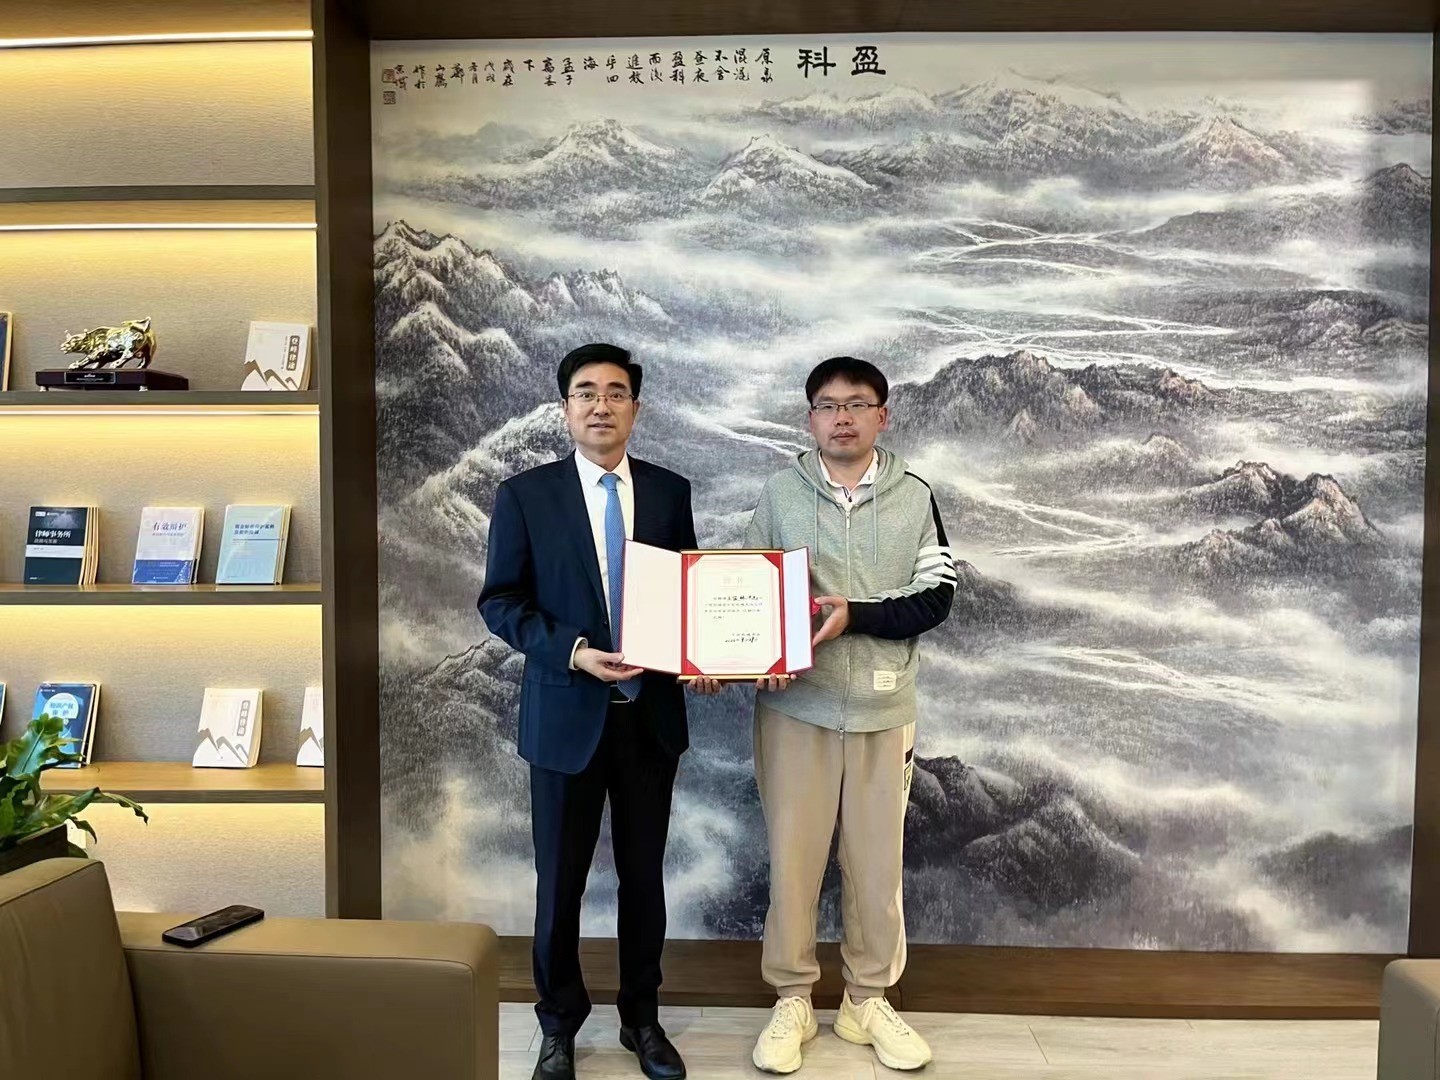 王俊林律师正式被聘为“中国长城学会到长城文化工作委员会专家团成员”